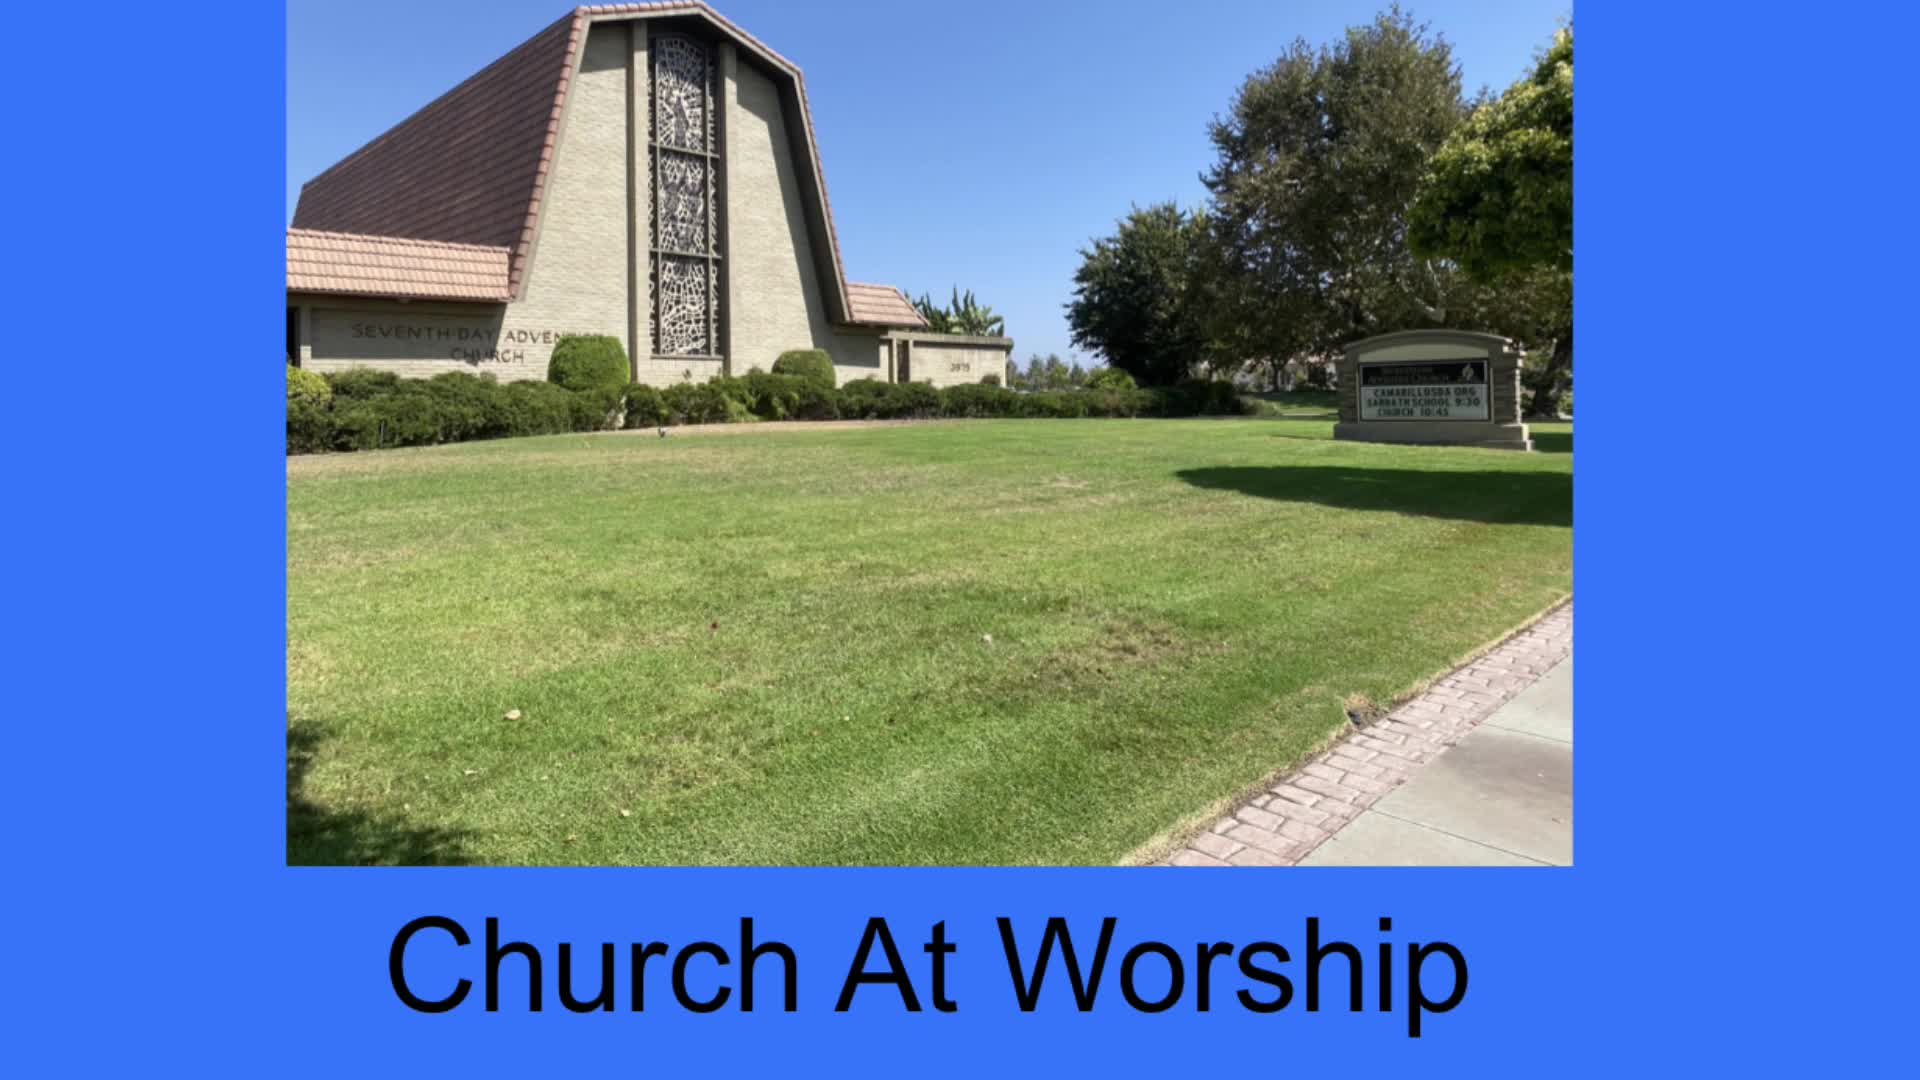 1/16/2021 Church at Worship